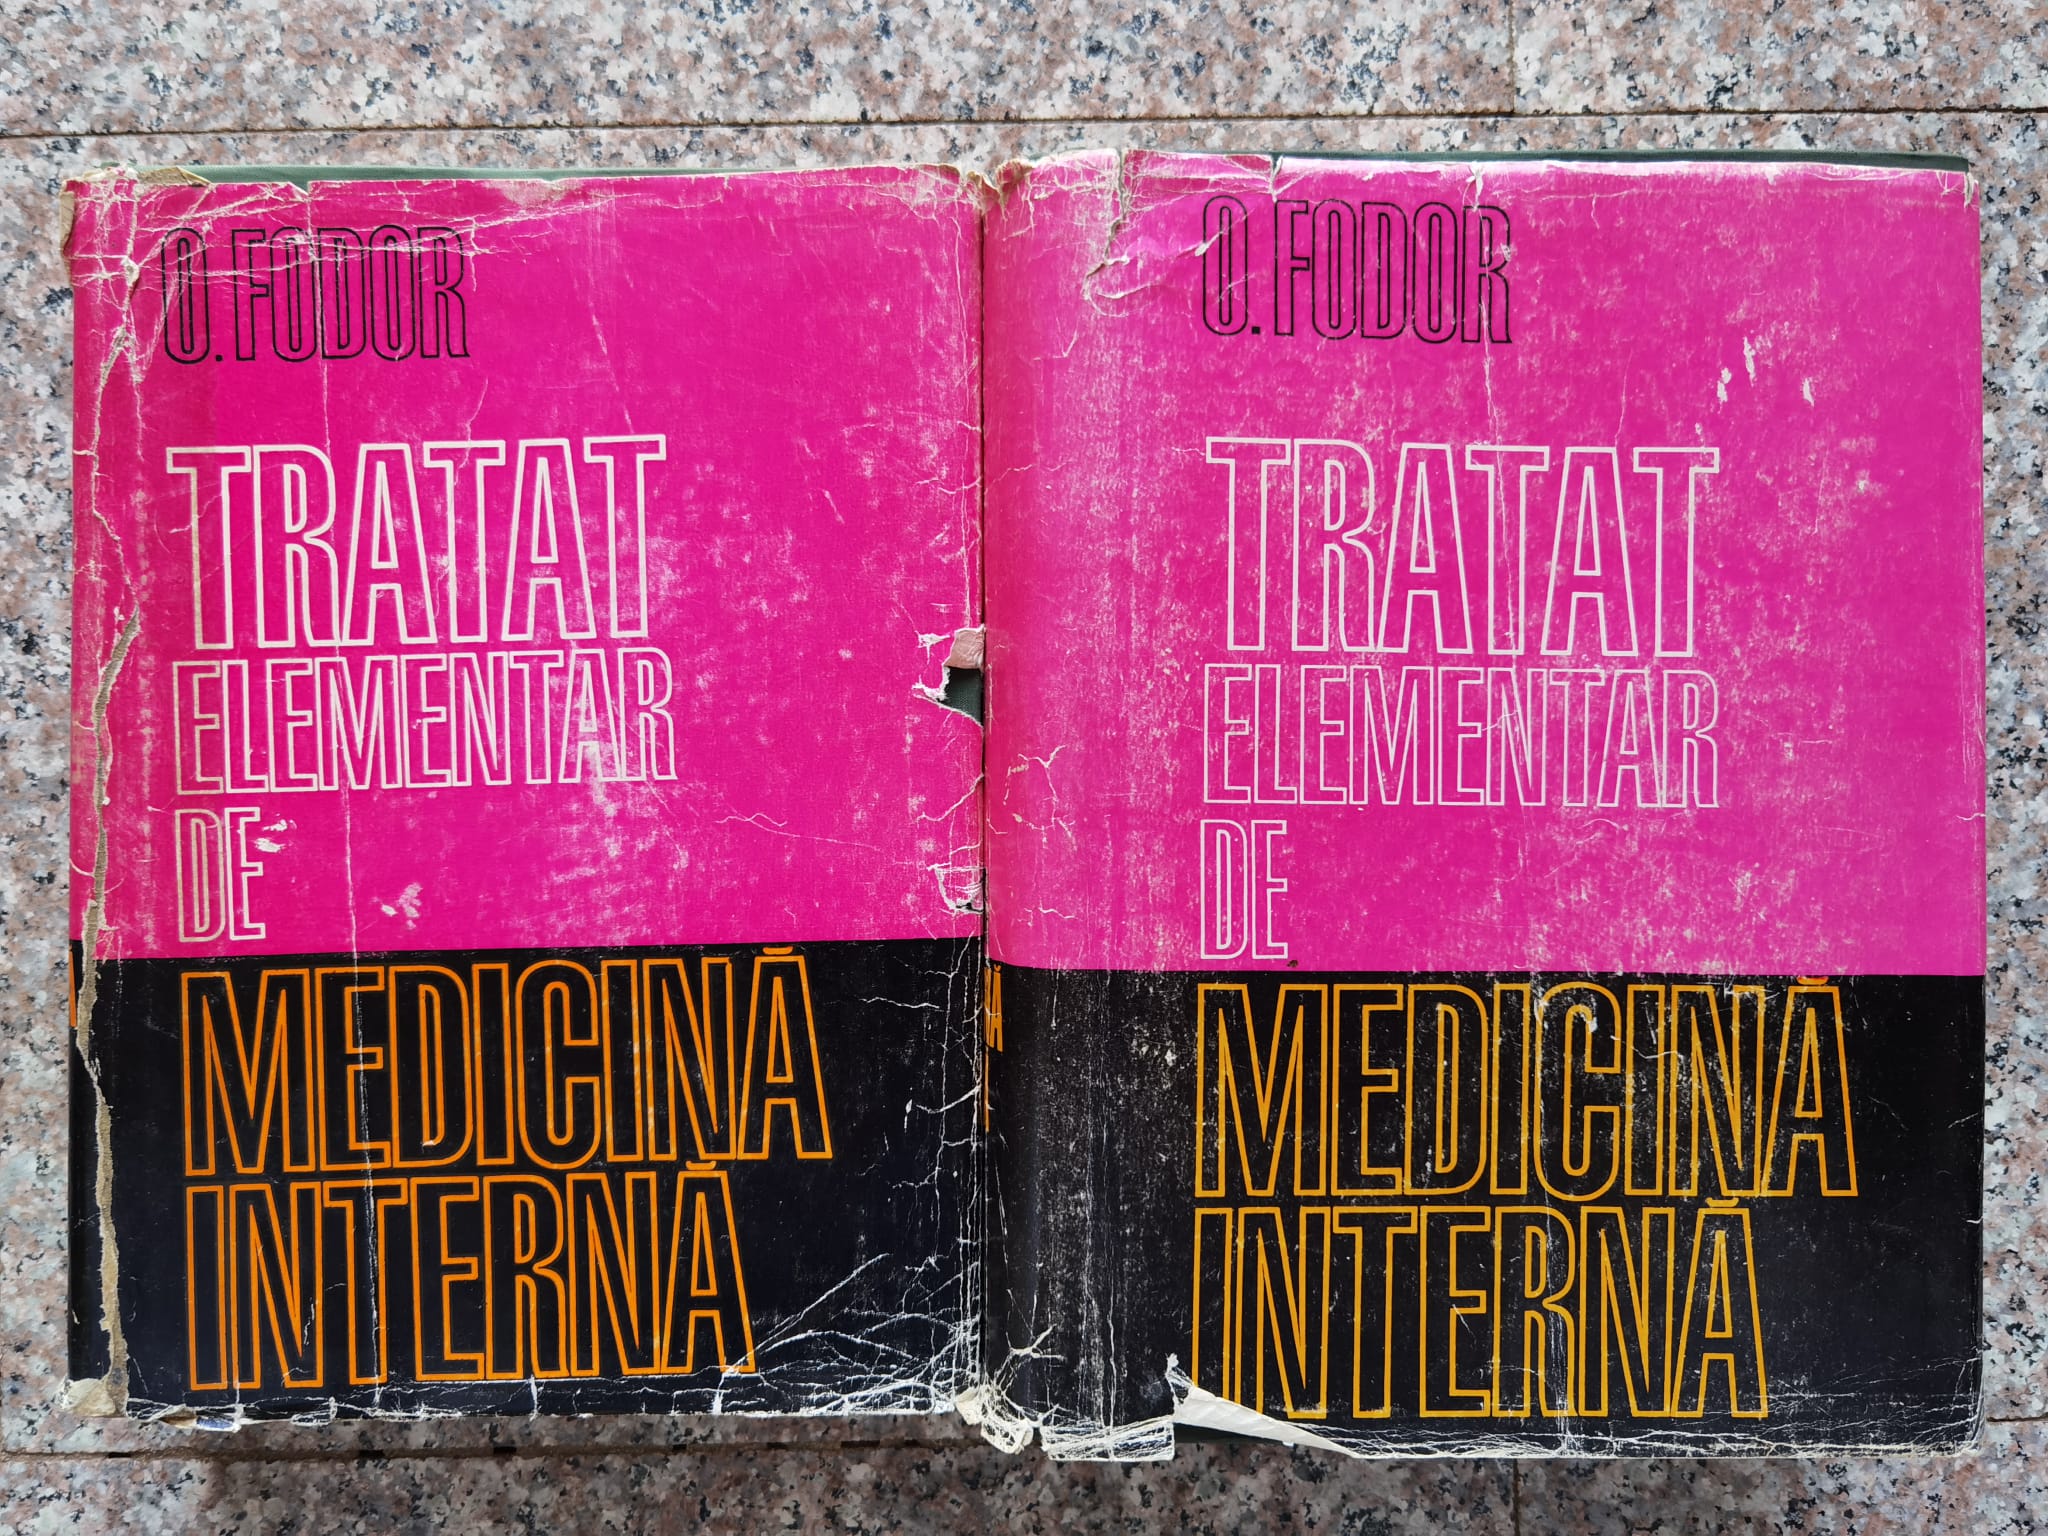 tratat elementar de medicina interna vol. 1-2                                                        octavian fodor                                                                                      